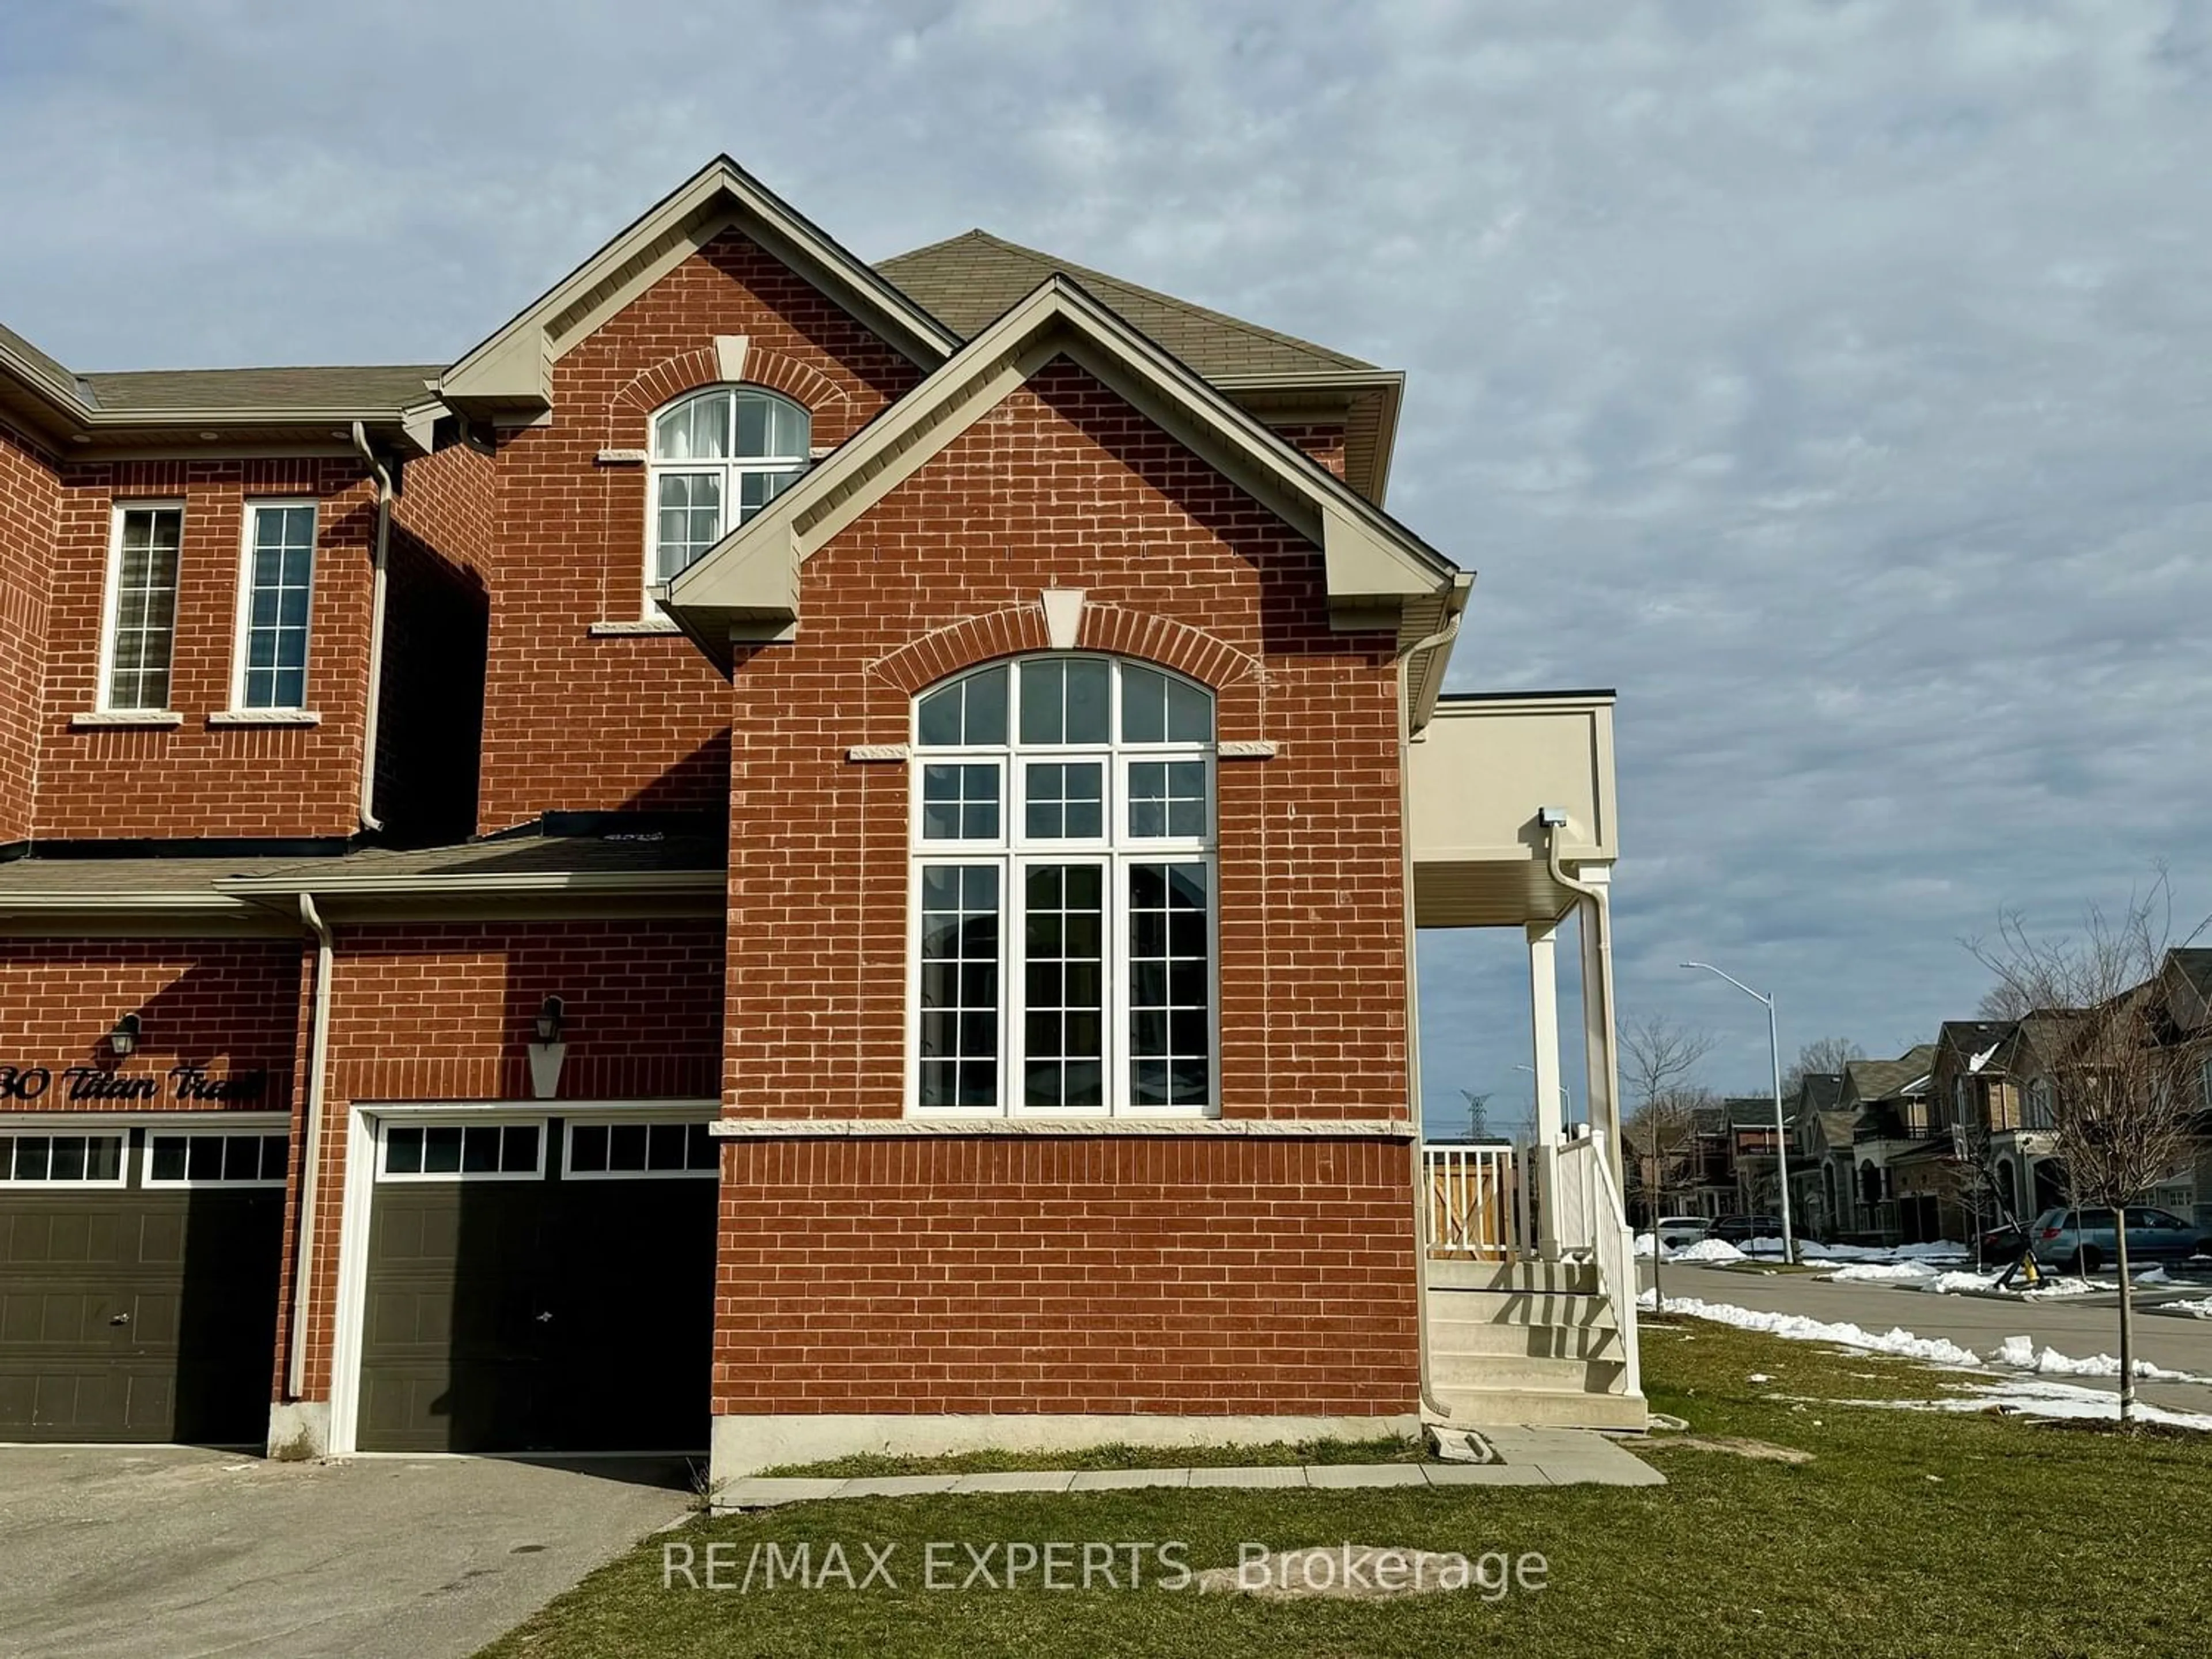 Home with brick exterior material for 32 Titan Tr, Markham Ontario L3S 0E2